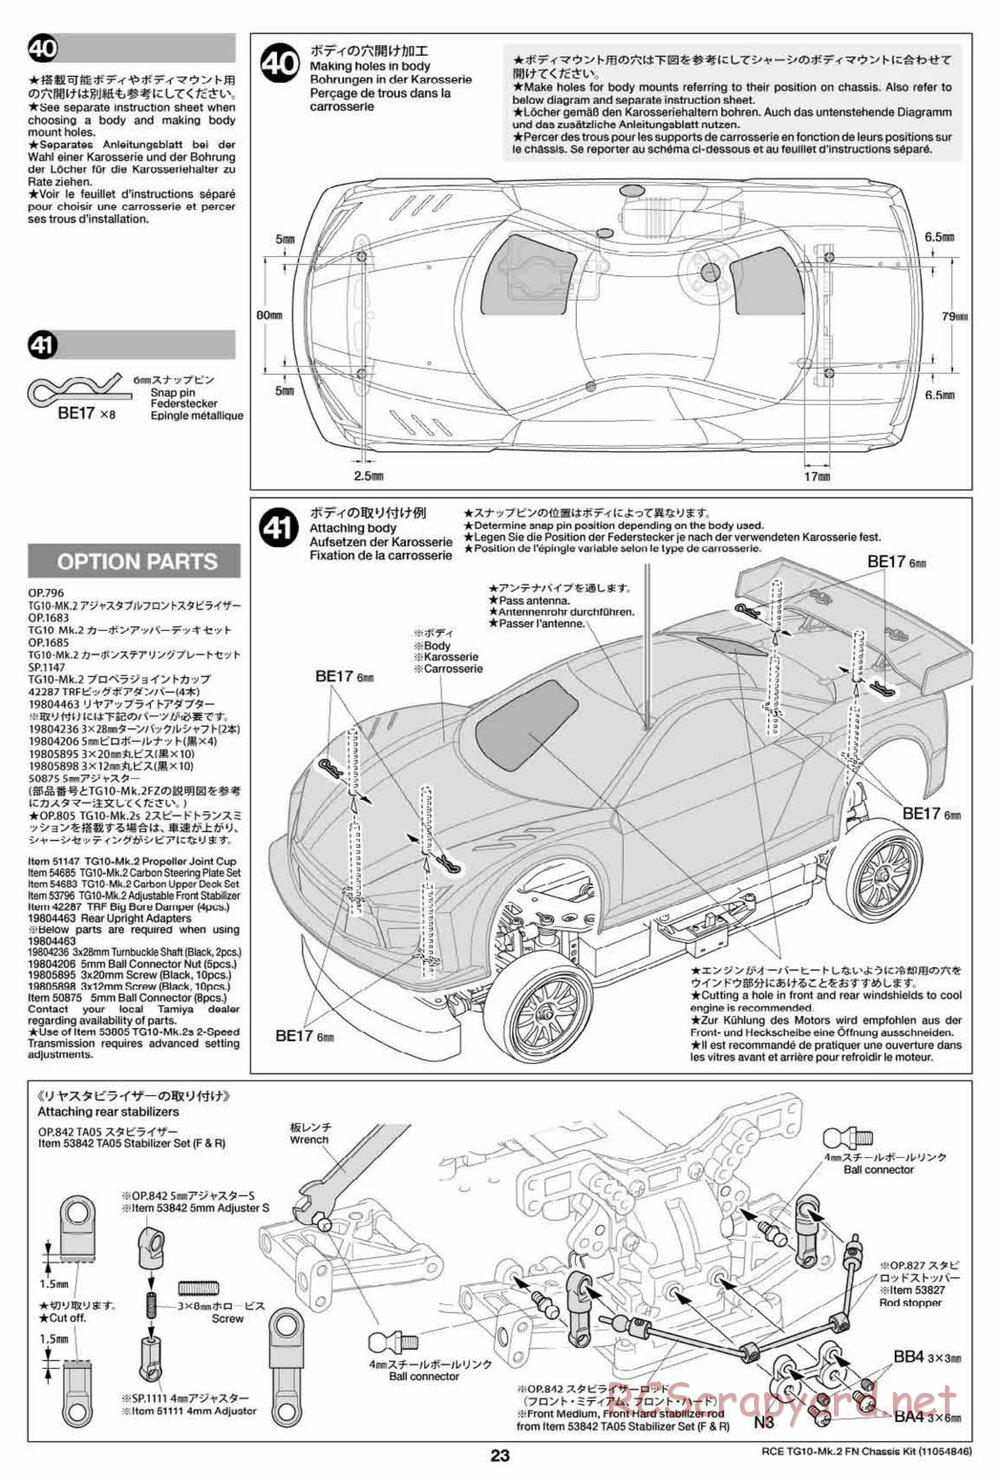 Tamiya - TG10 Mk.2 FN Chassis - Manual - Page 23